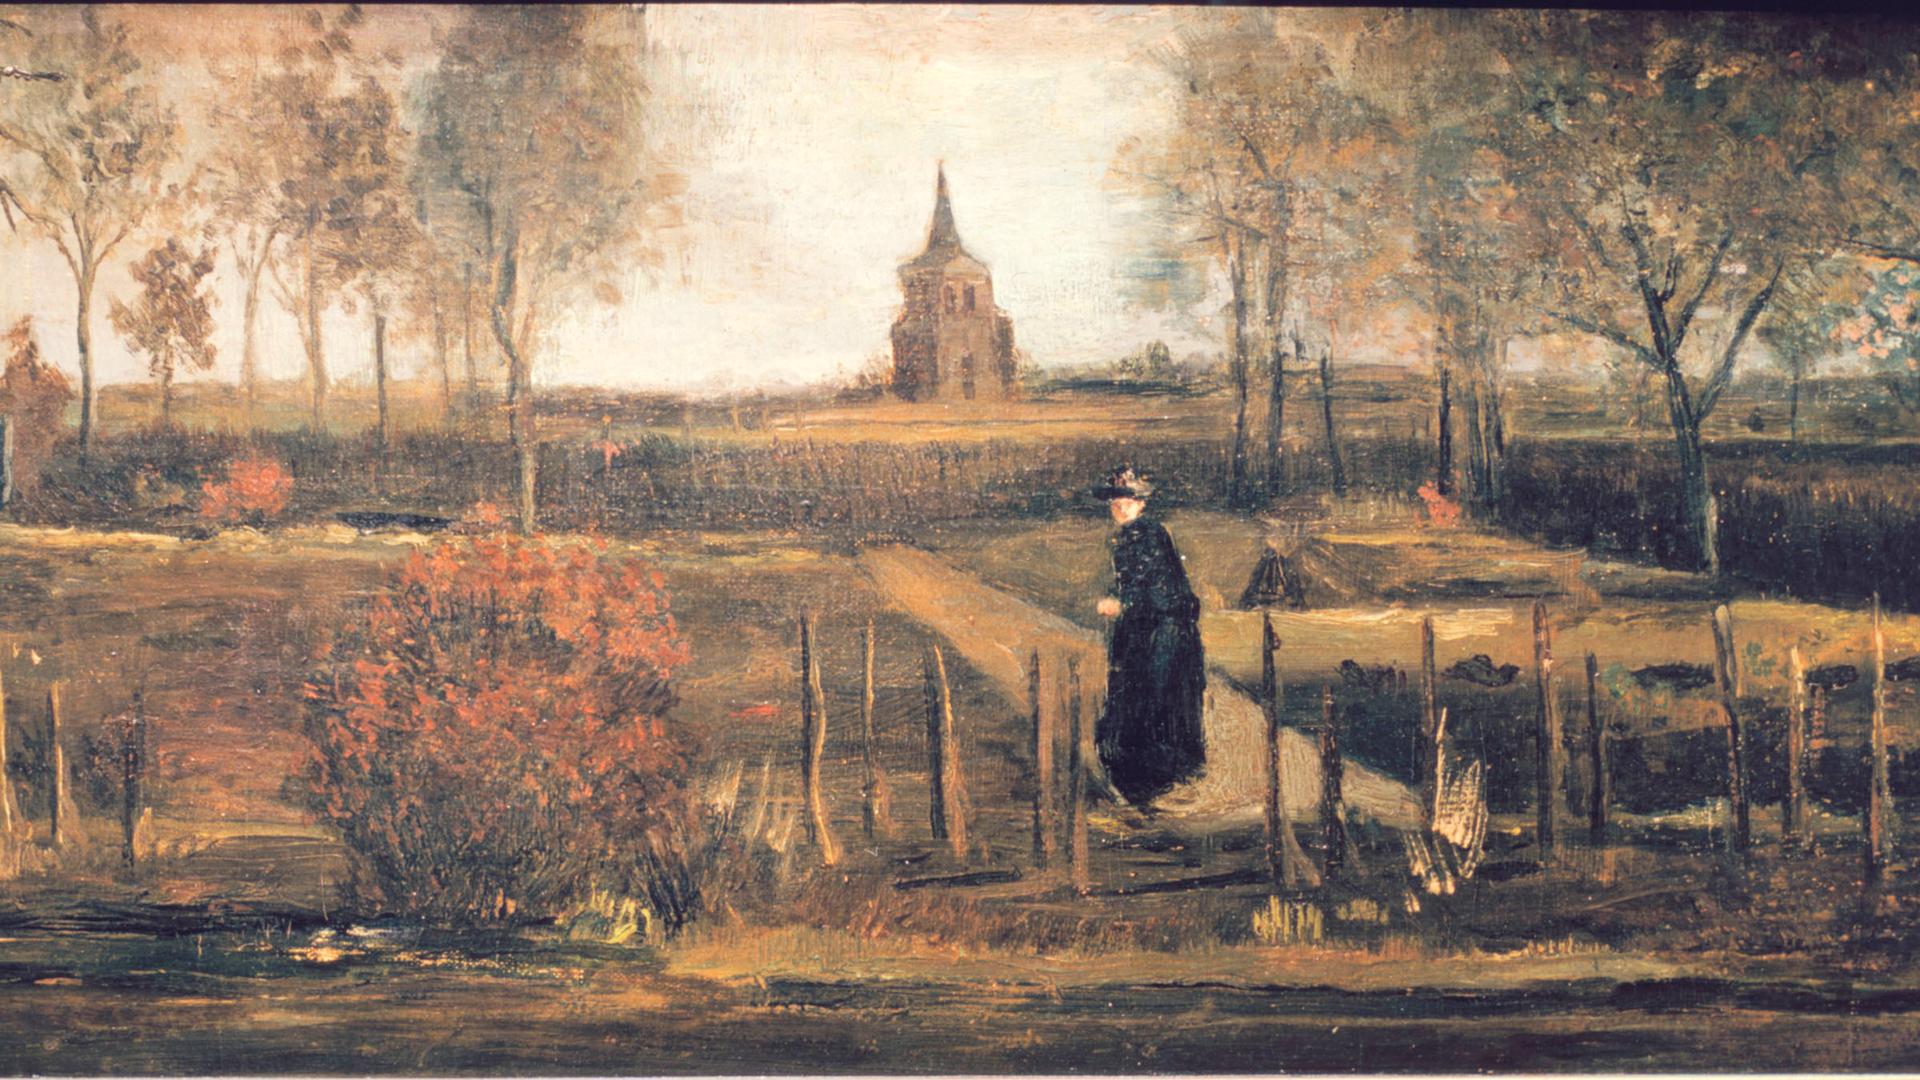 Das Gemälde "Pfarrgarten von Nuenen" zeigt einen Pfarrer im schwarzen Gewand in einem Garten, am Horizont eine Kirche.